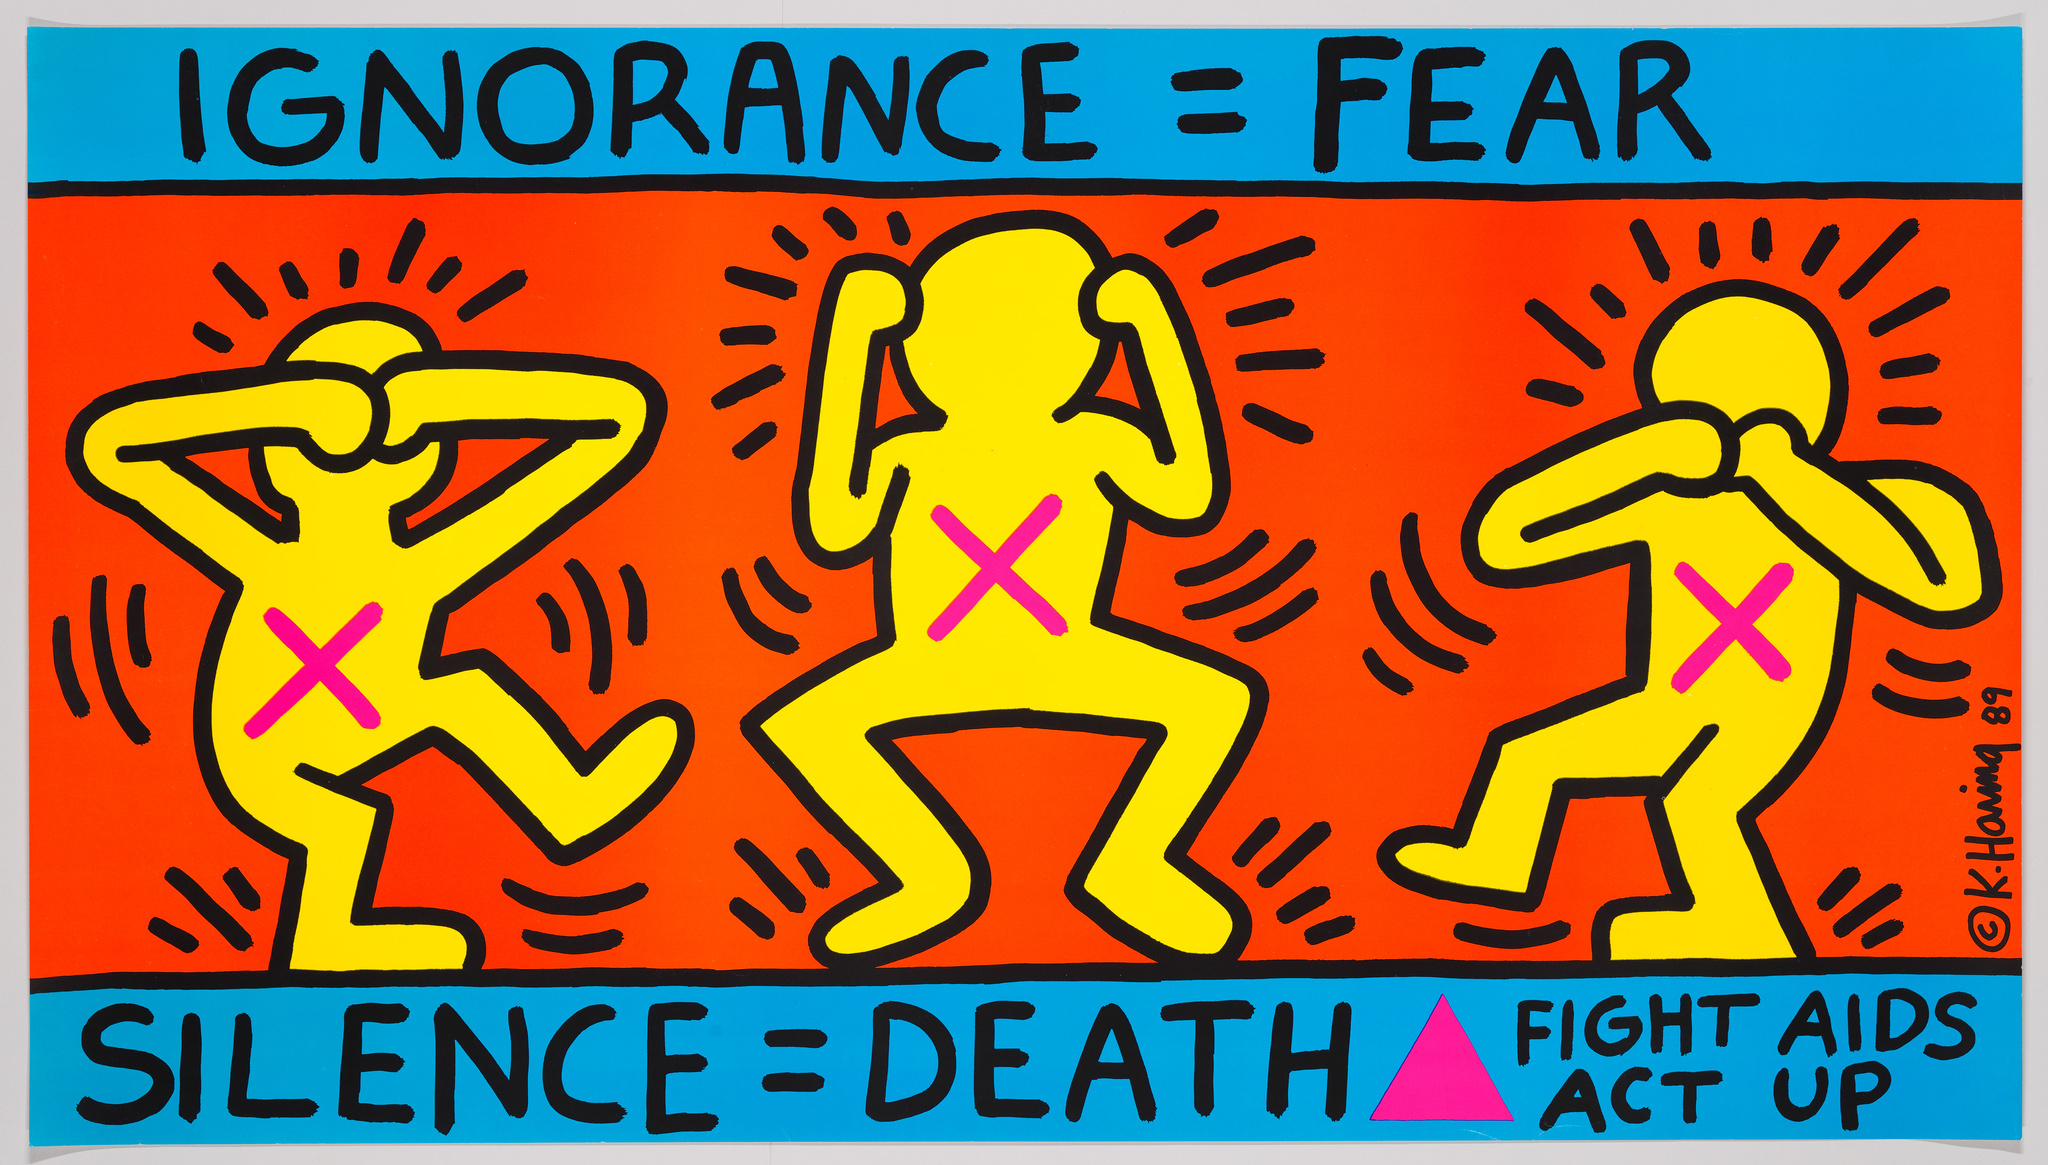  Keith Haring, Ignorance = Fear / Silence = Death, 1989